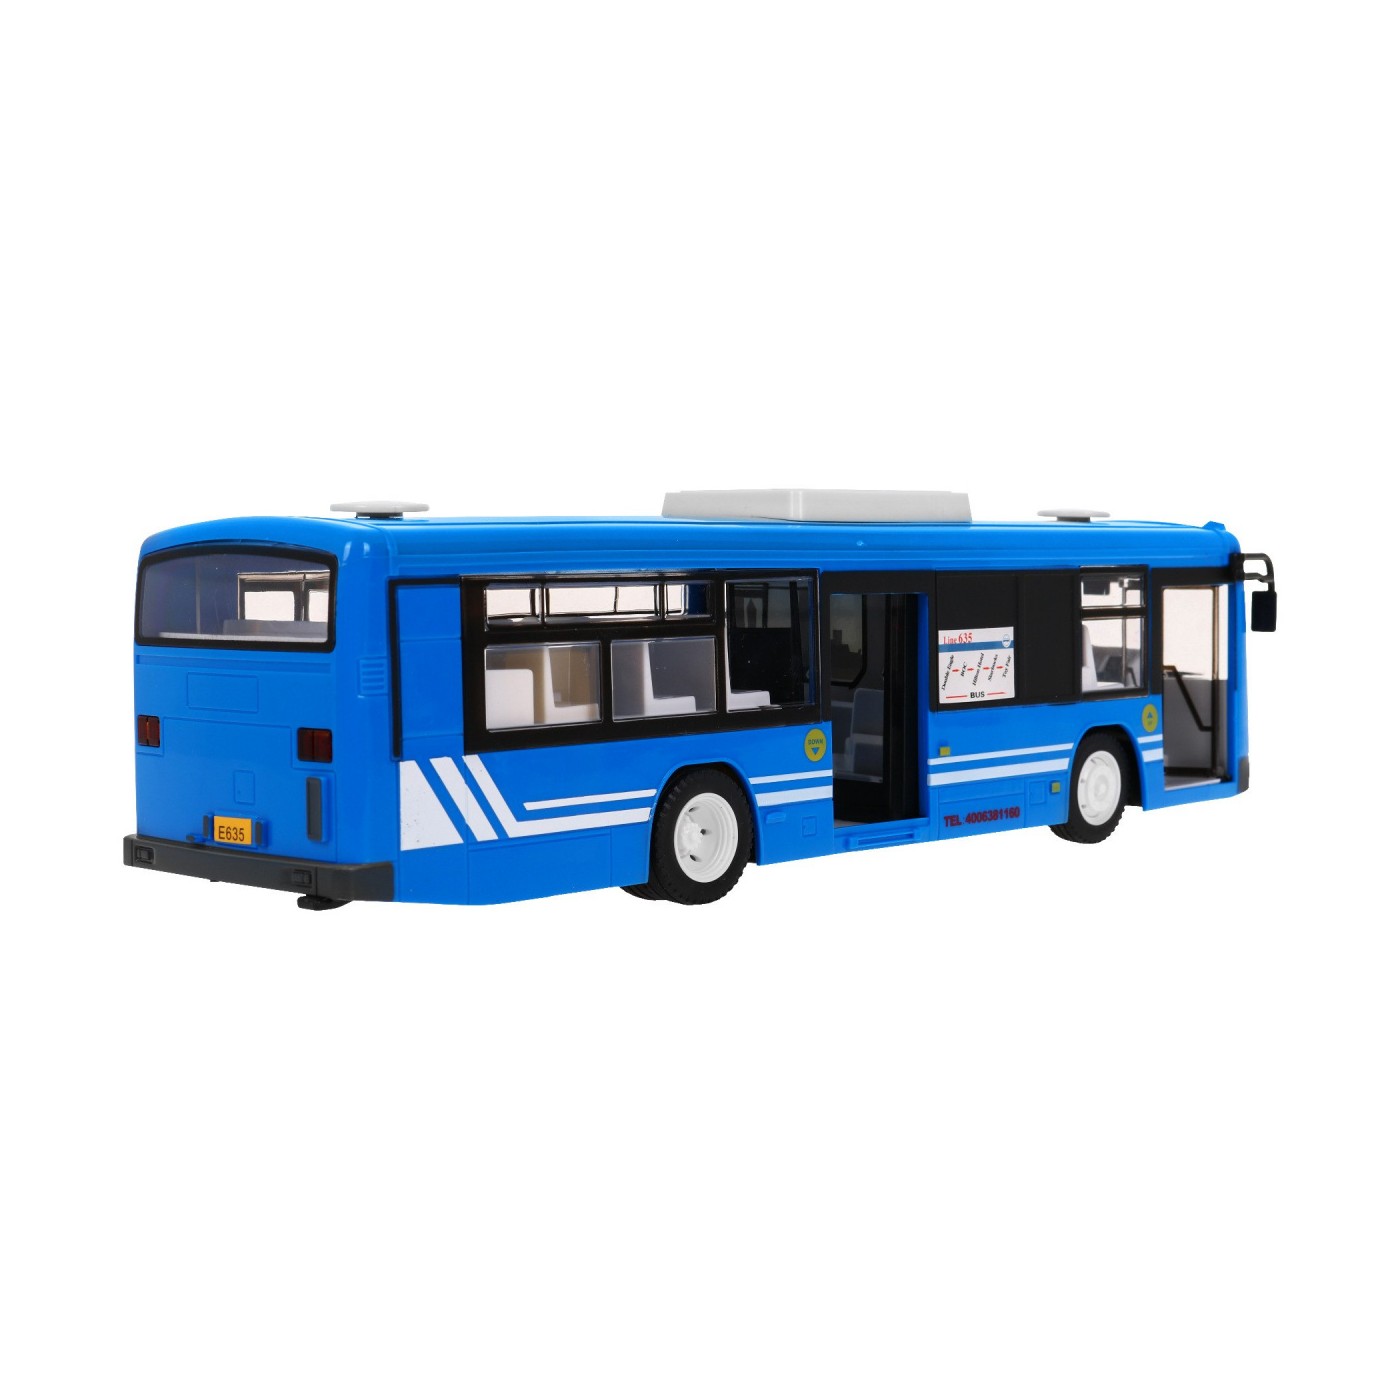 Autobus miejski dla dzieci 6+ Zdalnie sterowany Niebieski 1:20 Ruchome elementy + Dźwięki Światła